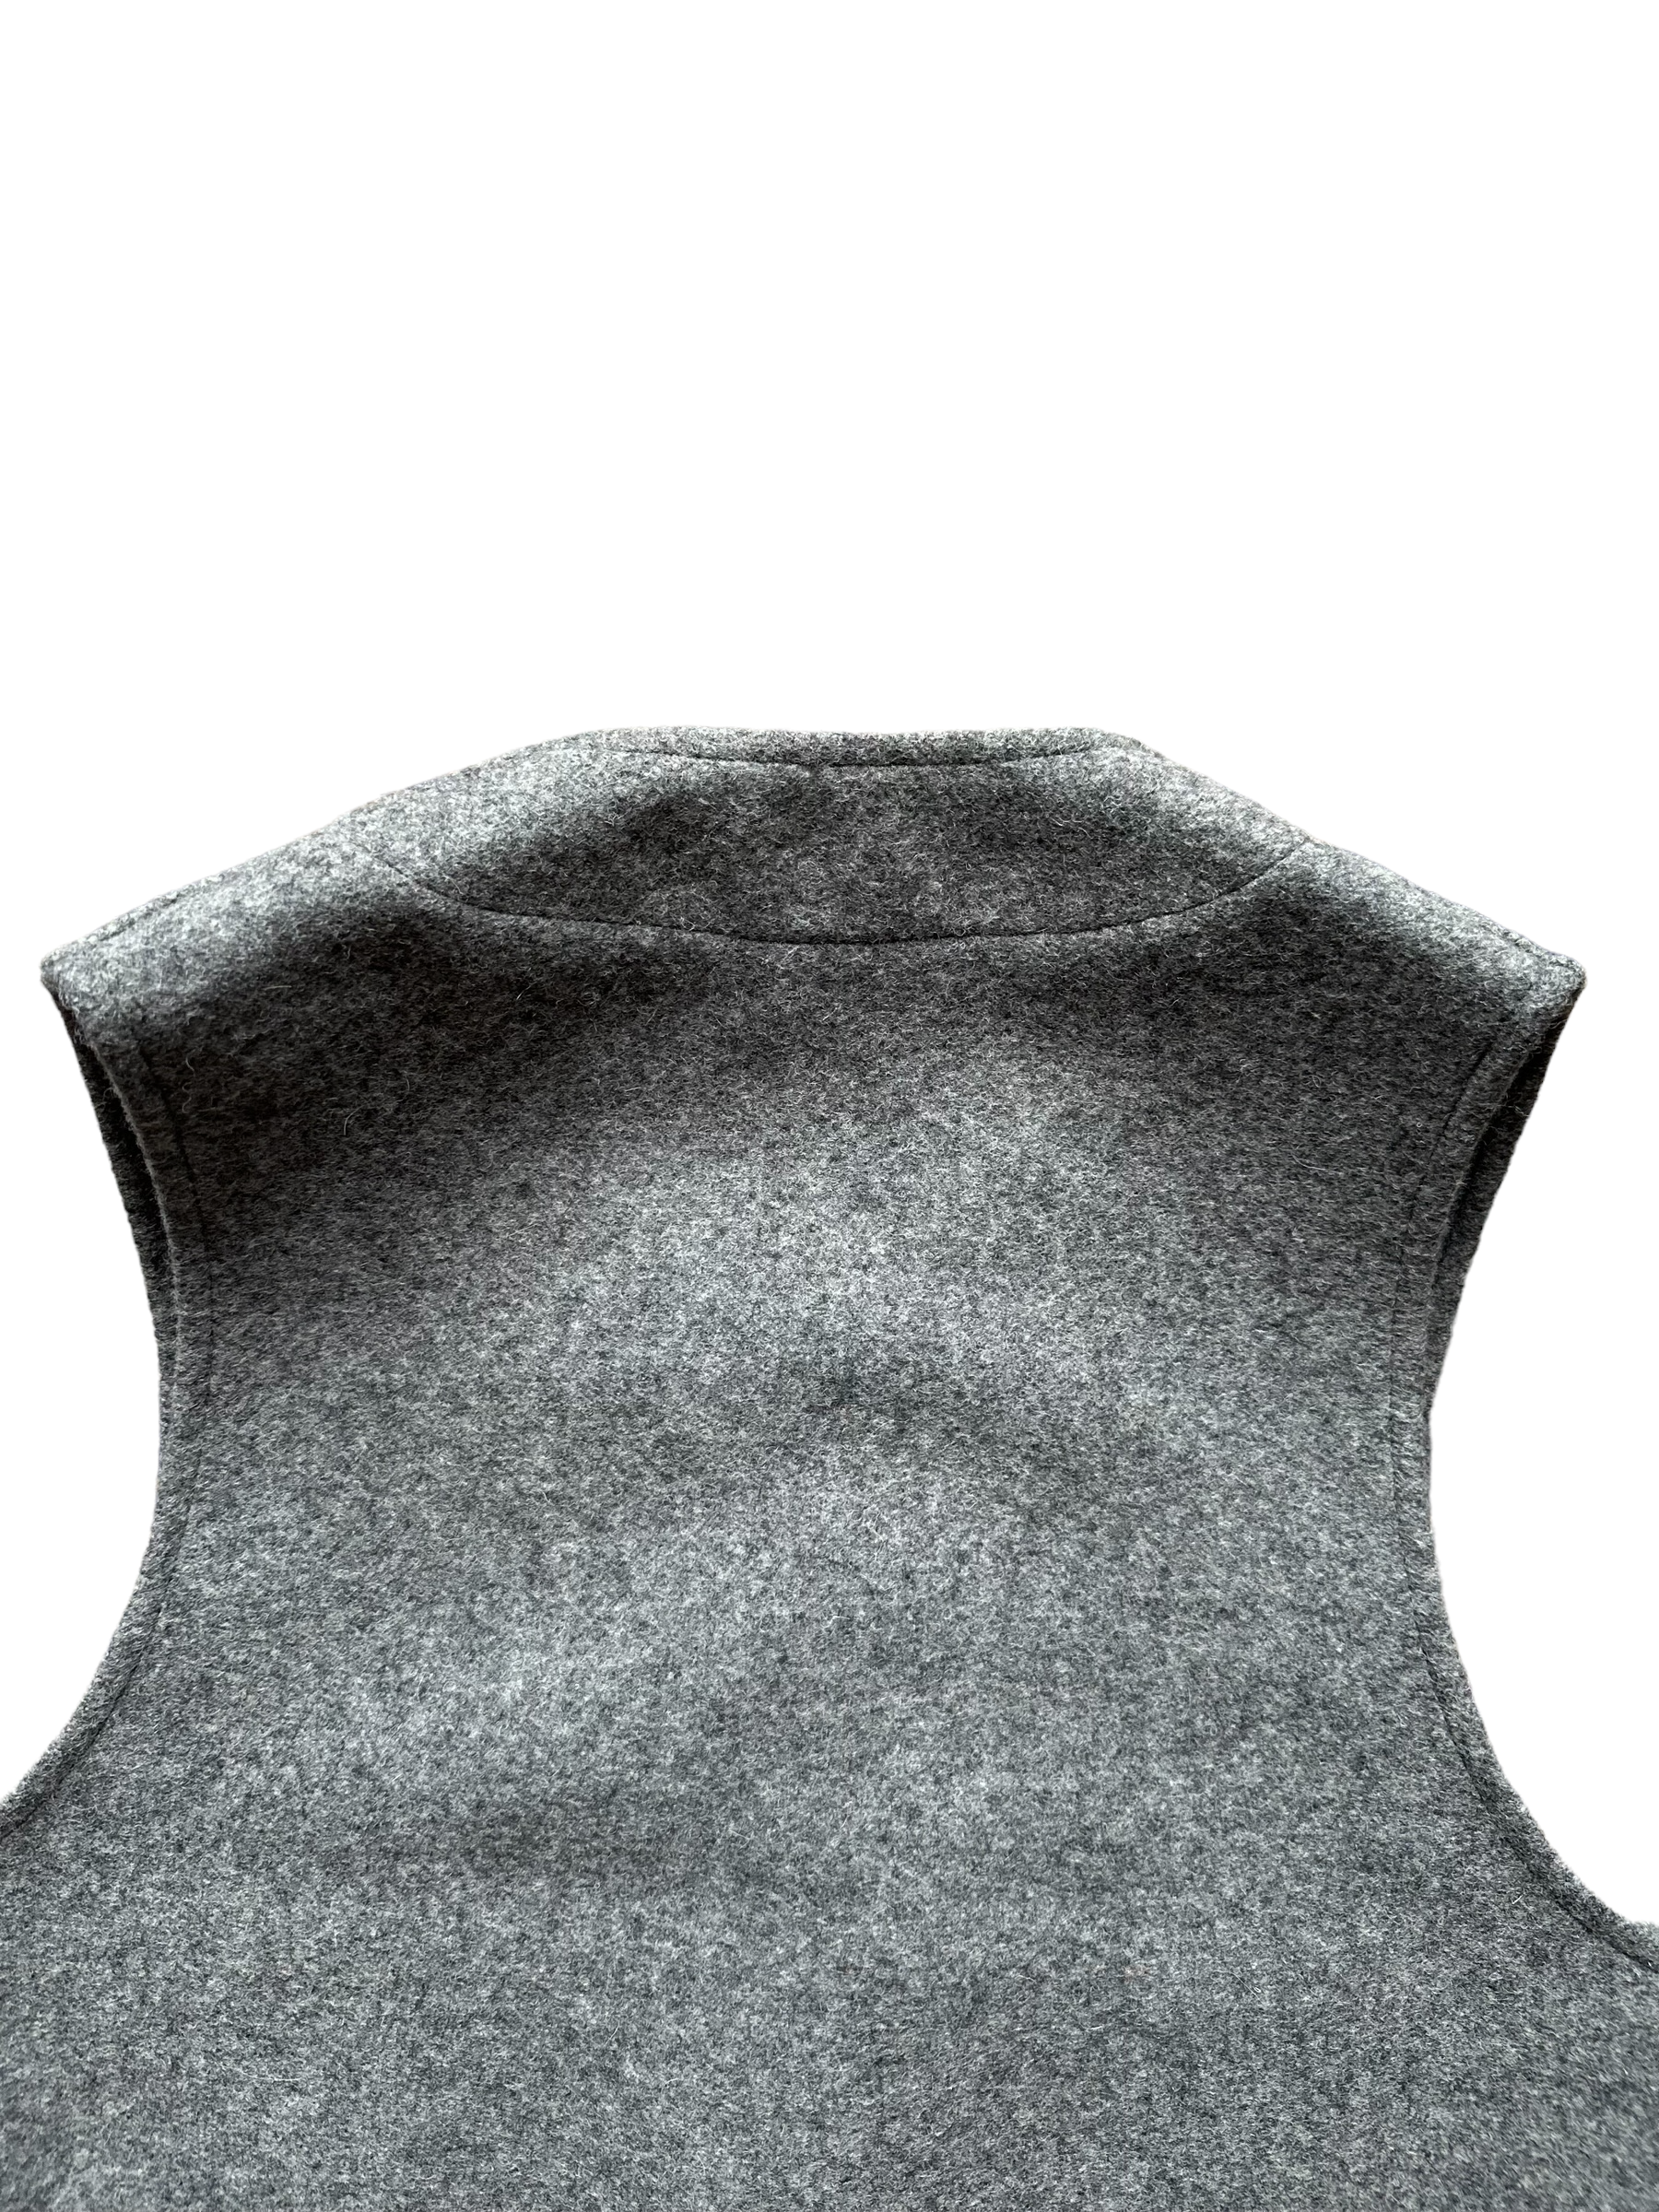 Upper Rear View of Vintage Filson Mackinaw Vest SZ 36 |  Grey Wool Vest | Seattle Vintage Workwear